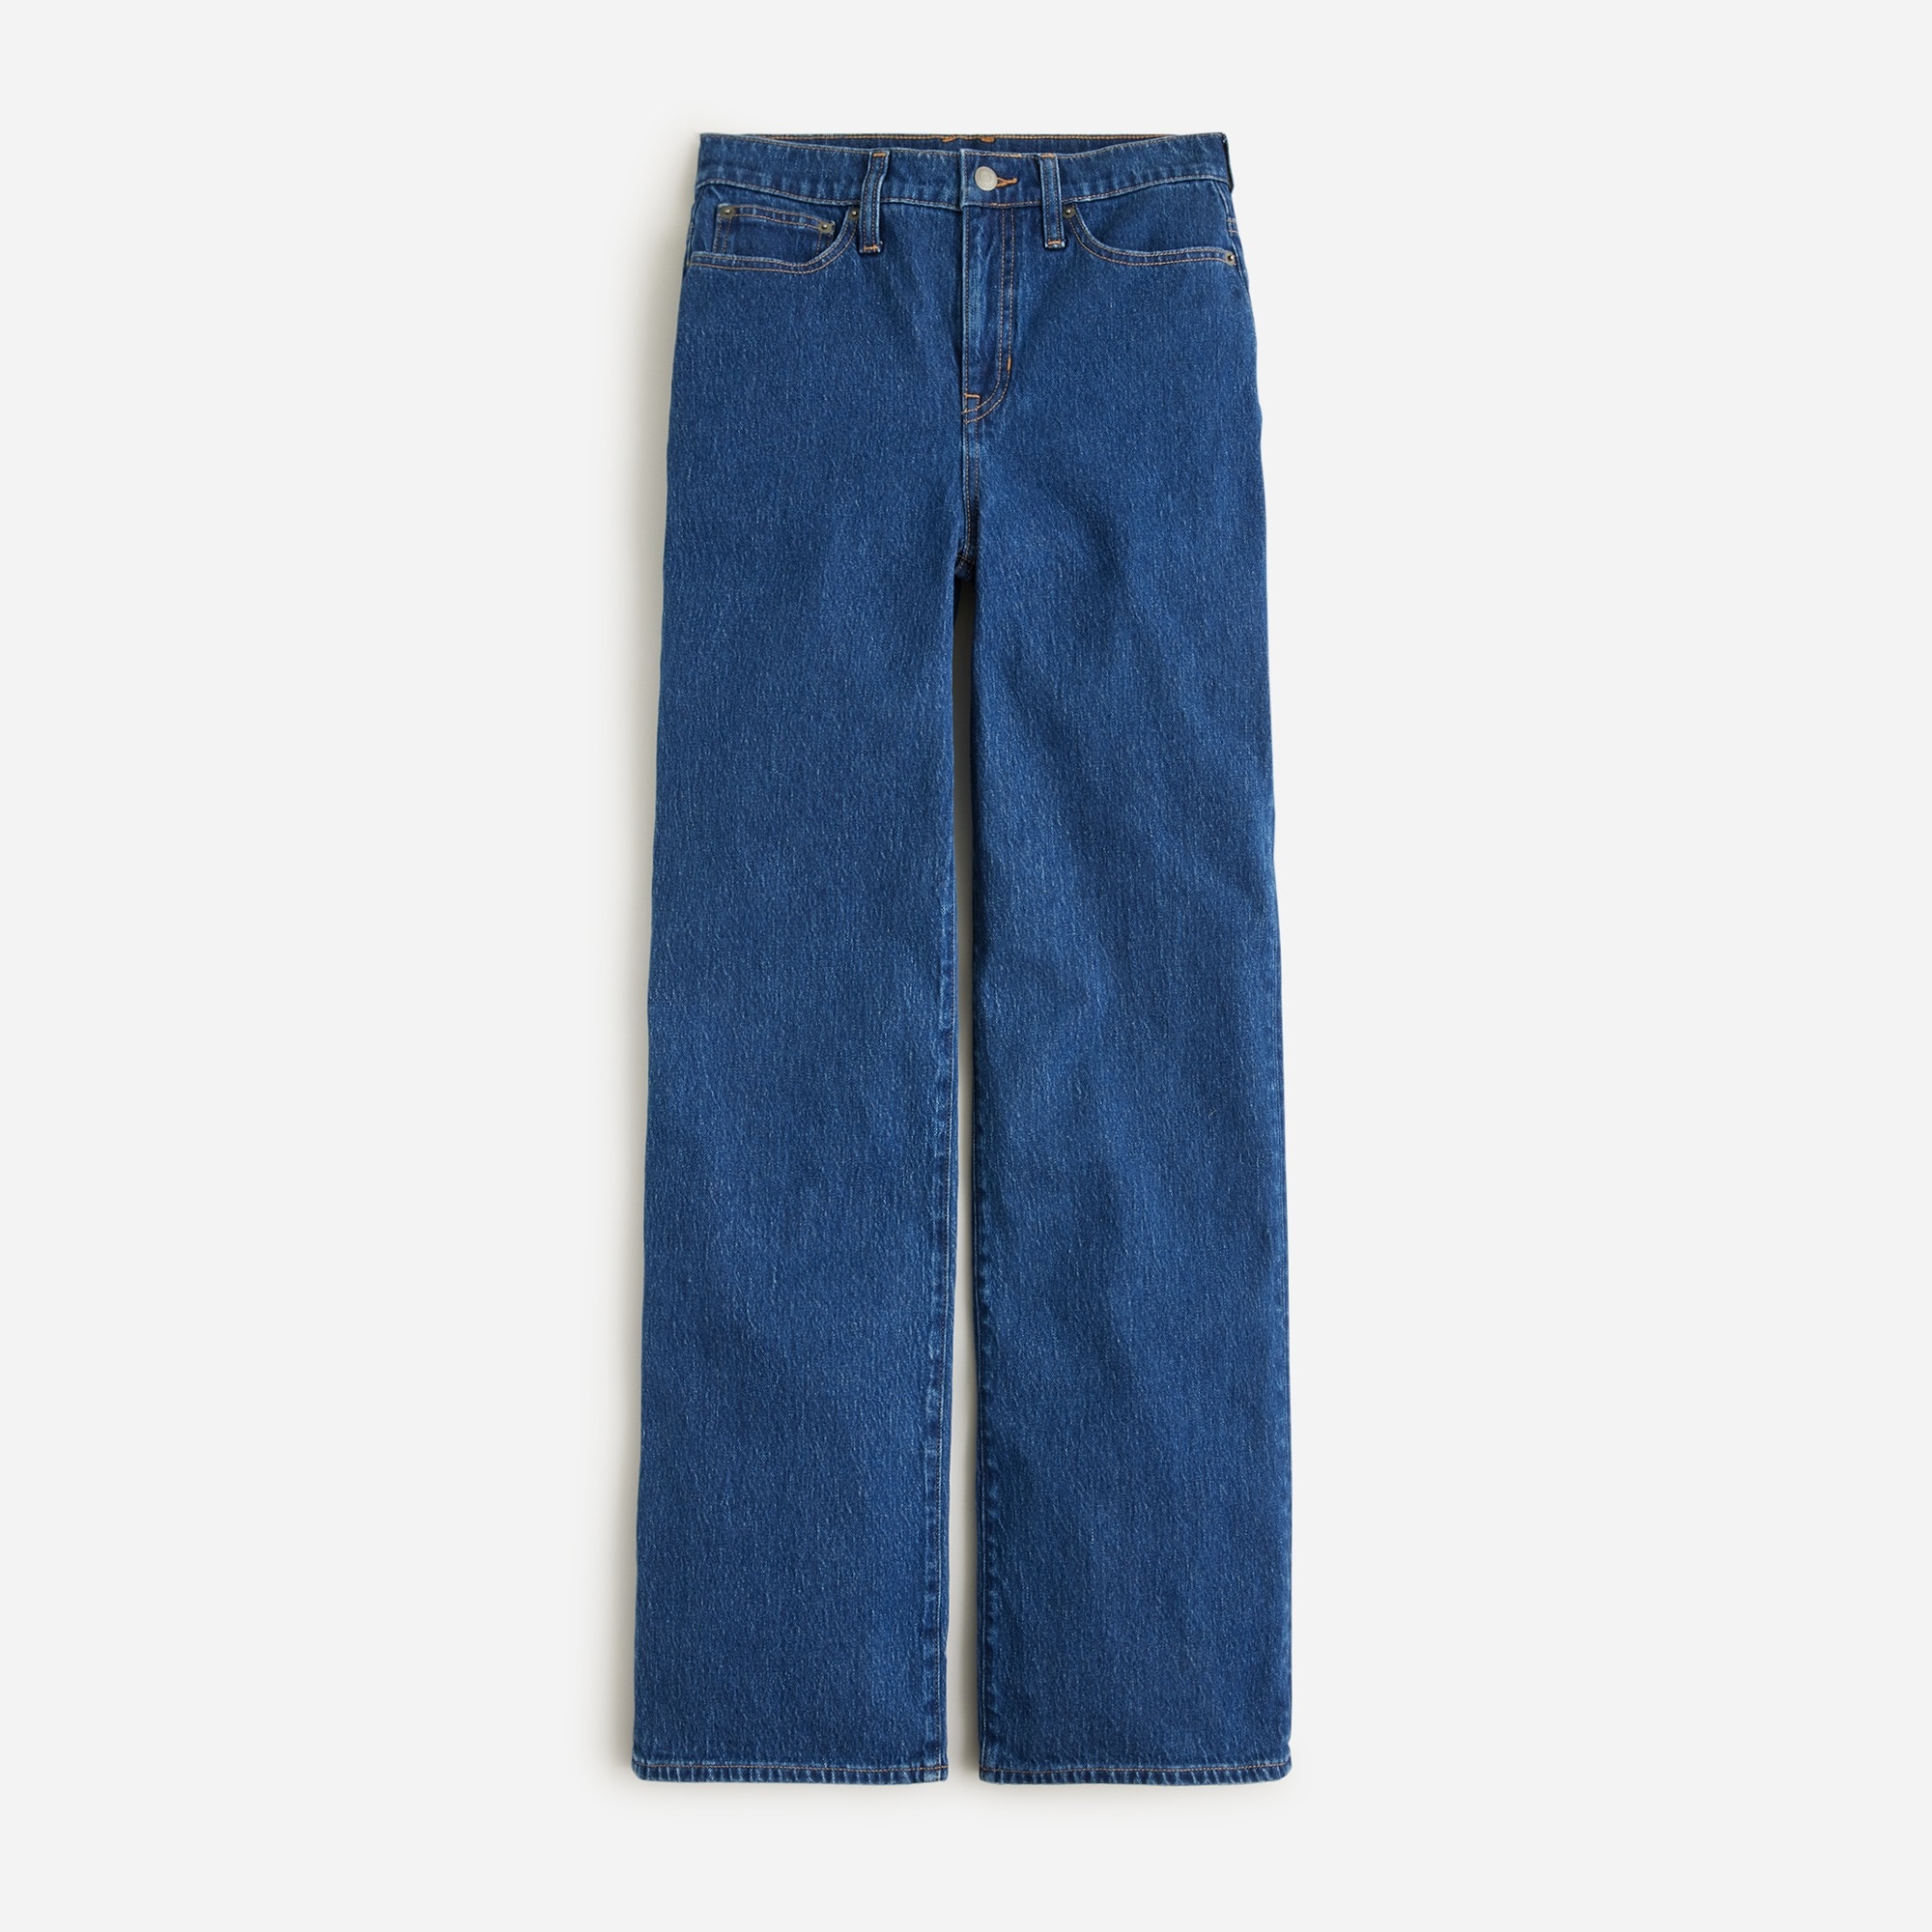  Petite full-length slim wide-leg jean in Brick lane wash